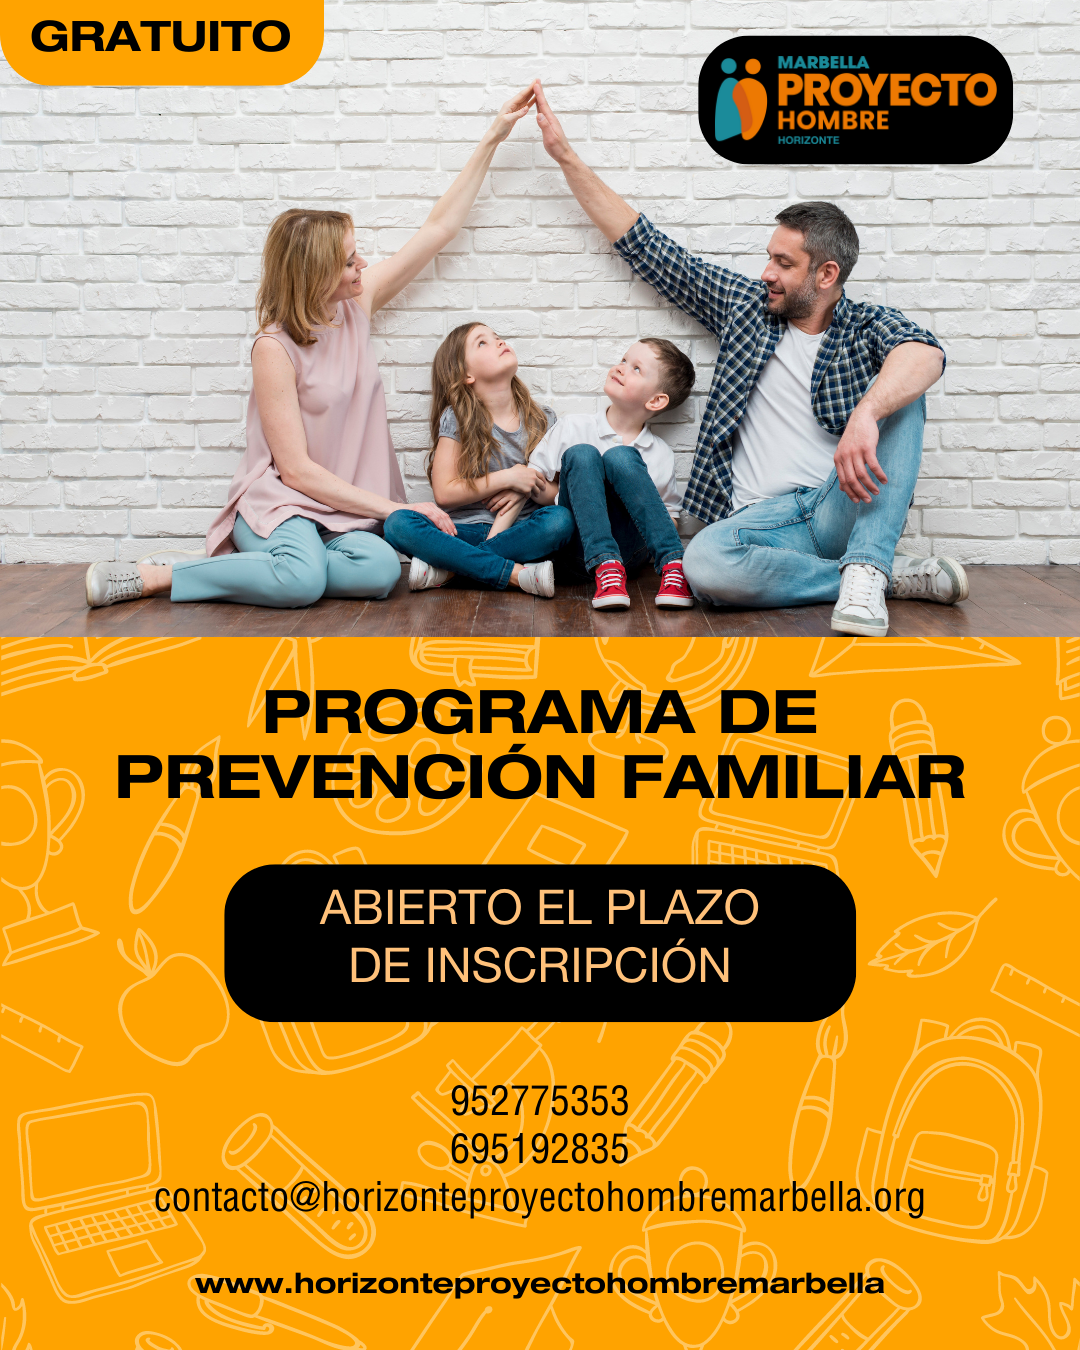 Horizonte Proyecto Hombre organiza una nueva edición gratuita de su Programa de Prevención Familiar